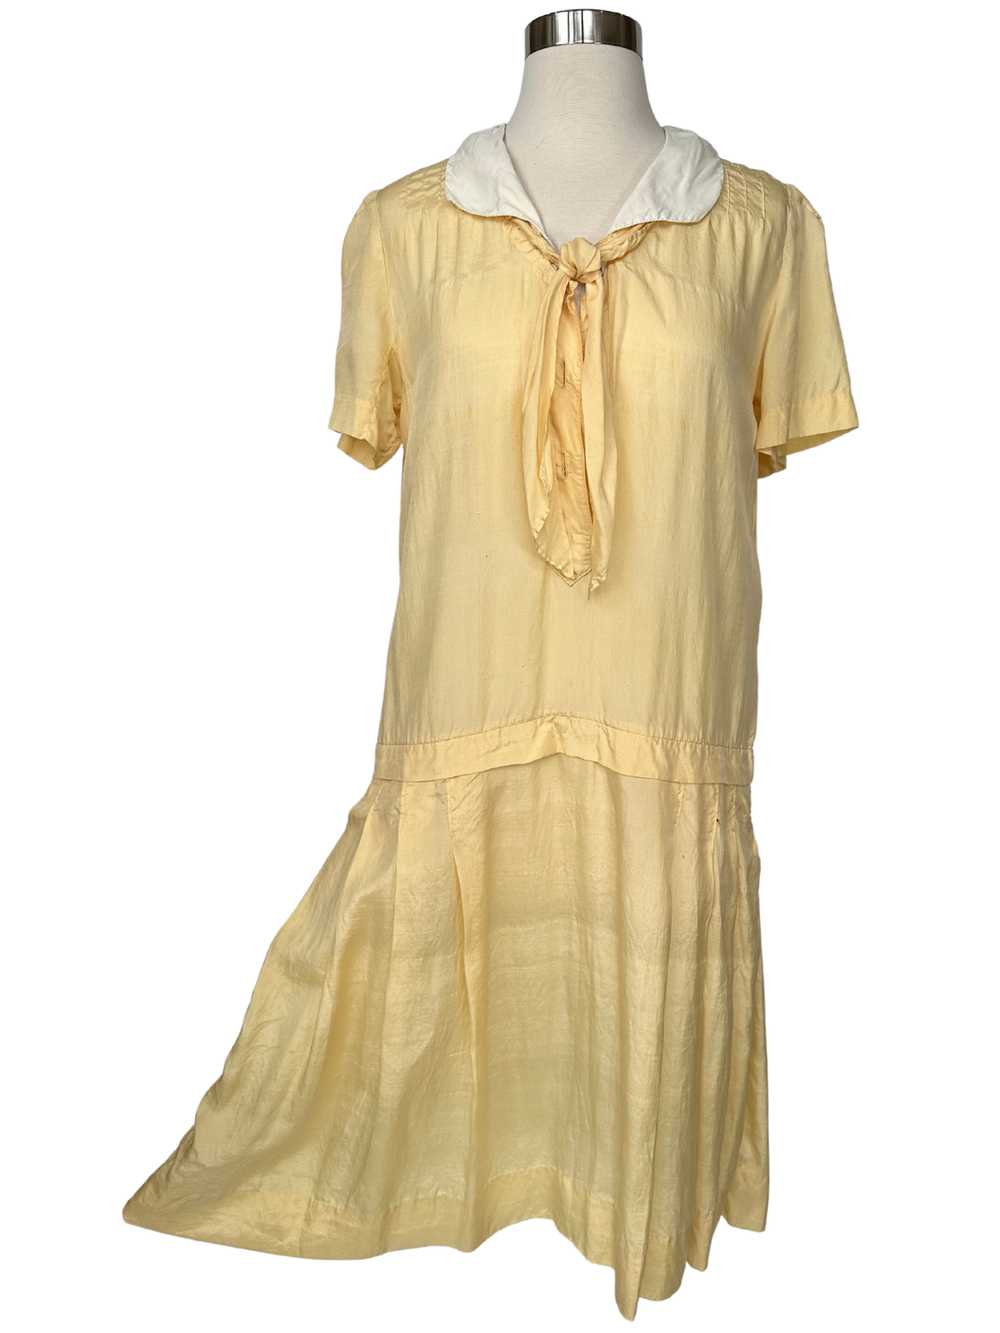 Vintage 1920s Yellow Cotton Flapper Dress - M - image 5